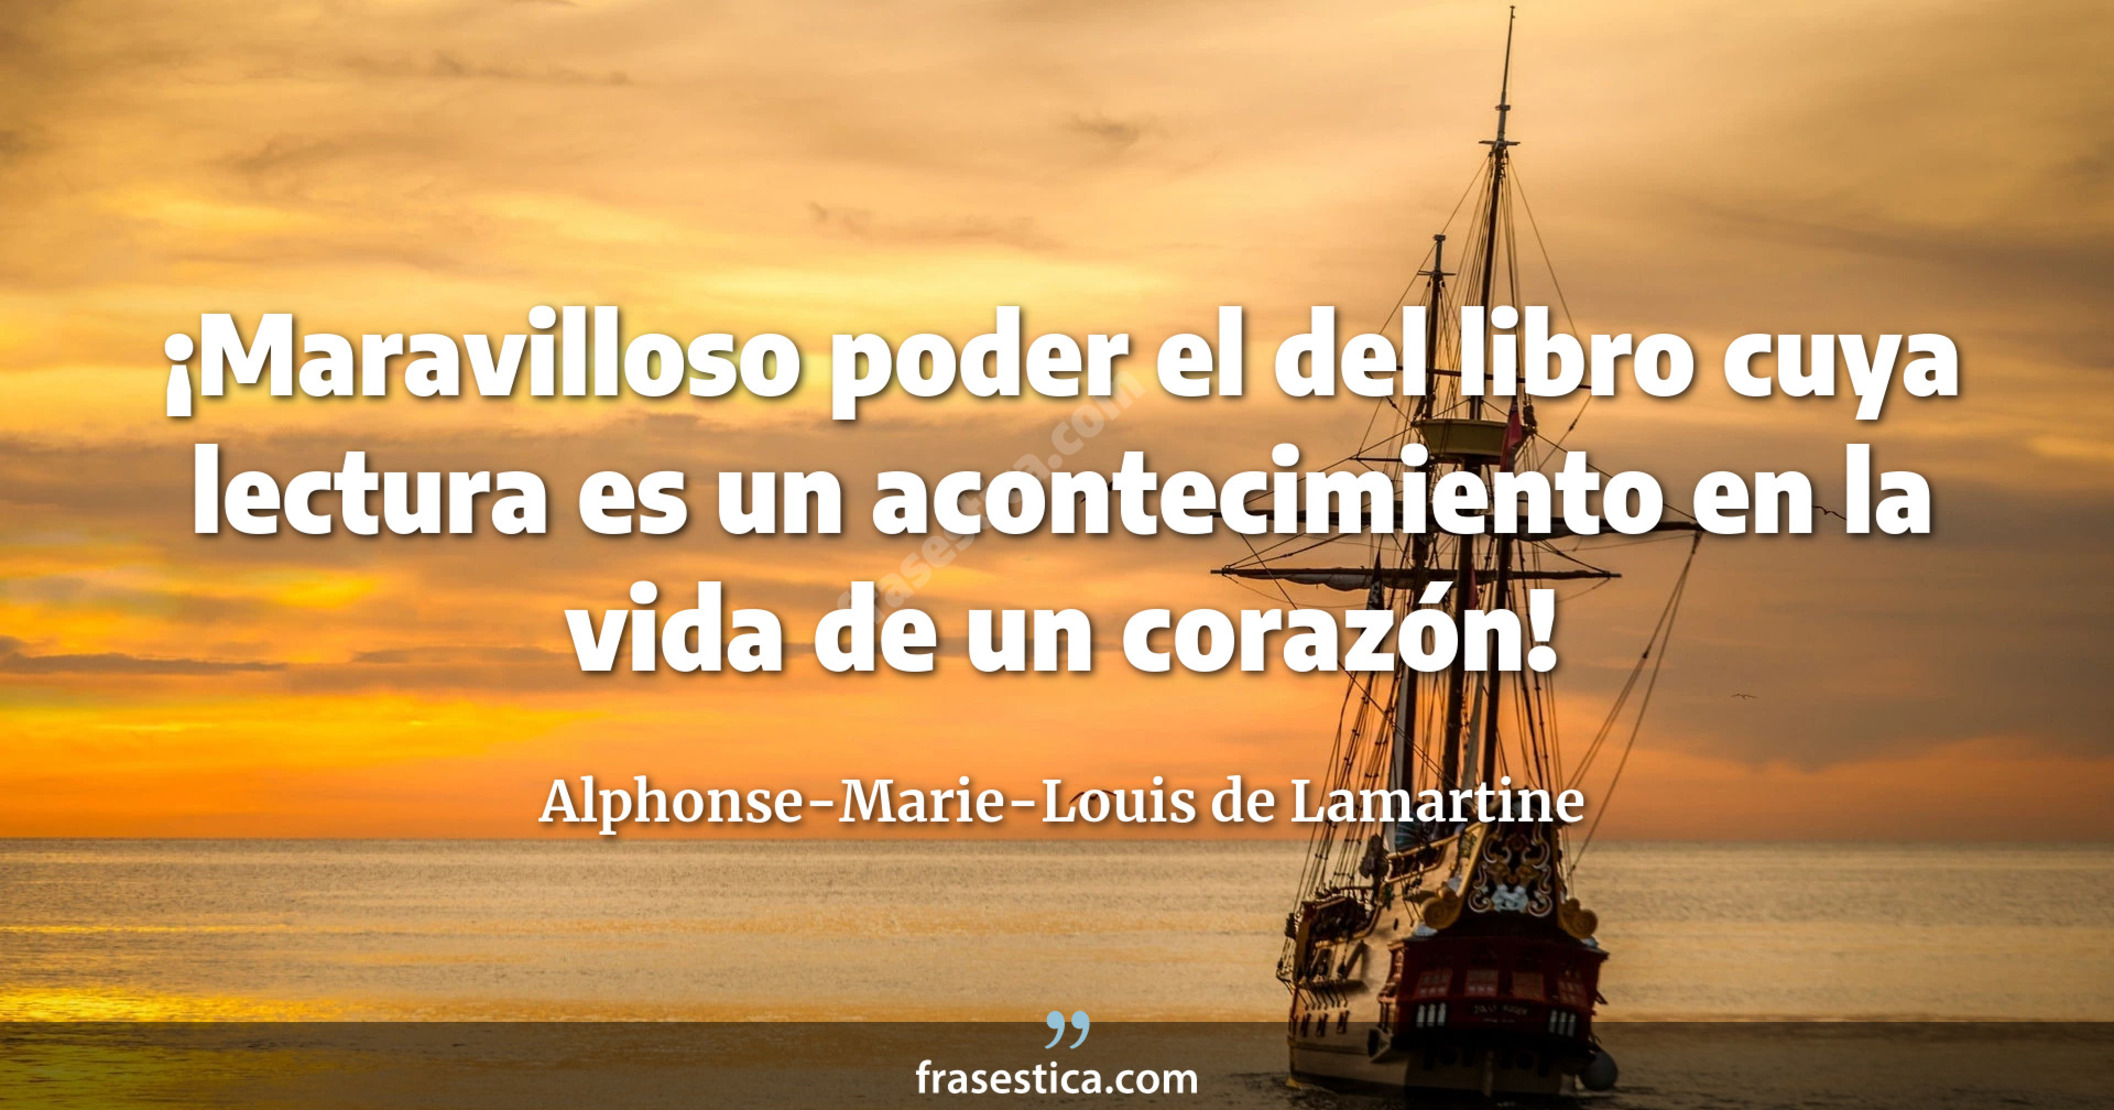 ¡Maravilloso poder el del libro cuya lectura es un acontecimiento en la vida de un corazón! - Alphonse-Marie-Louis de Lamartine